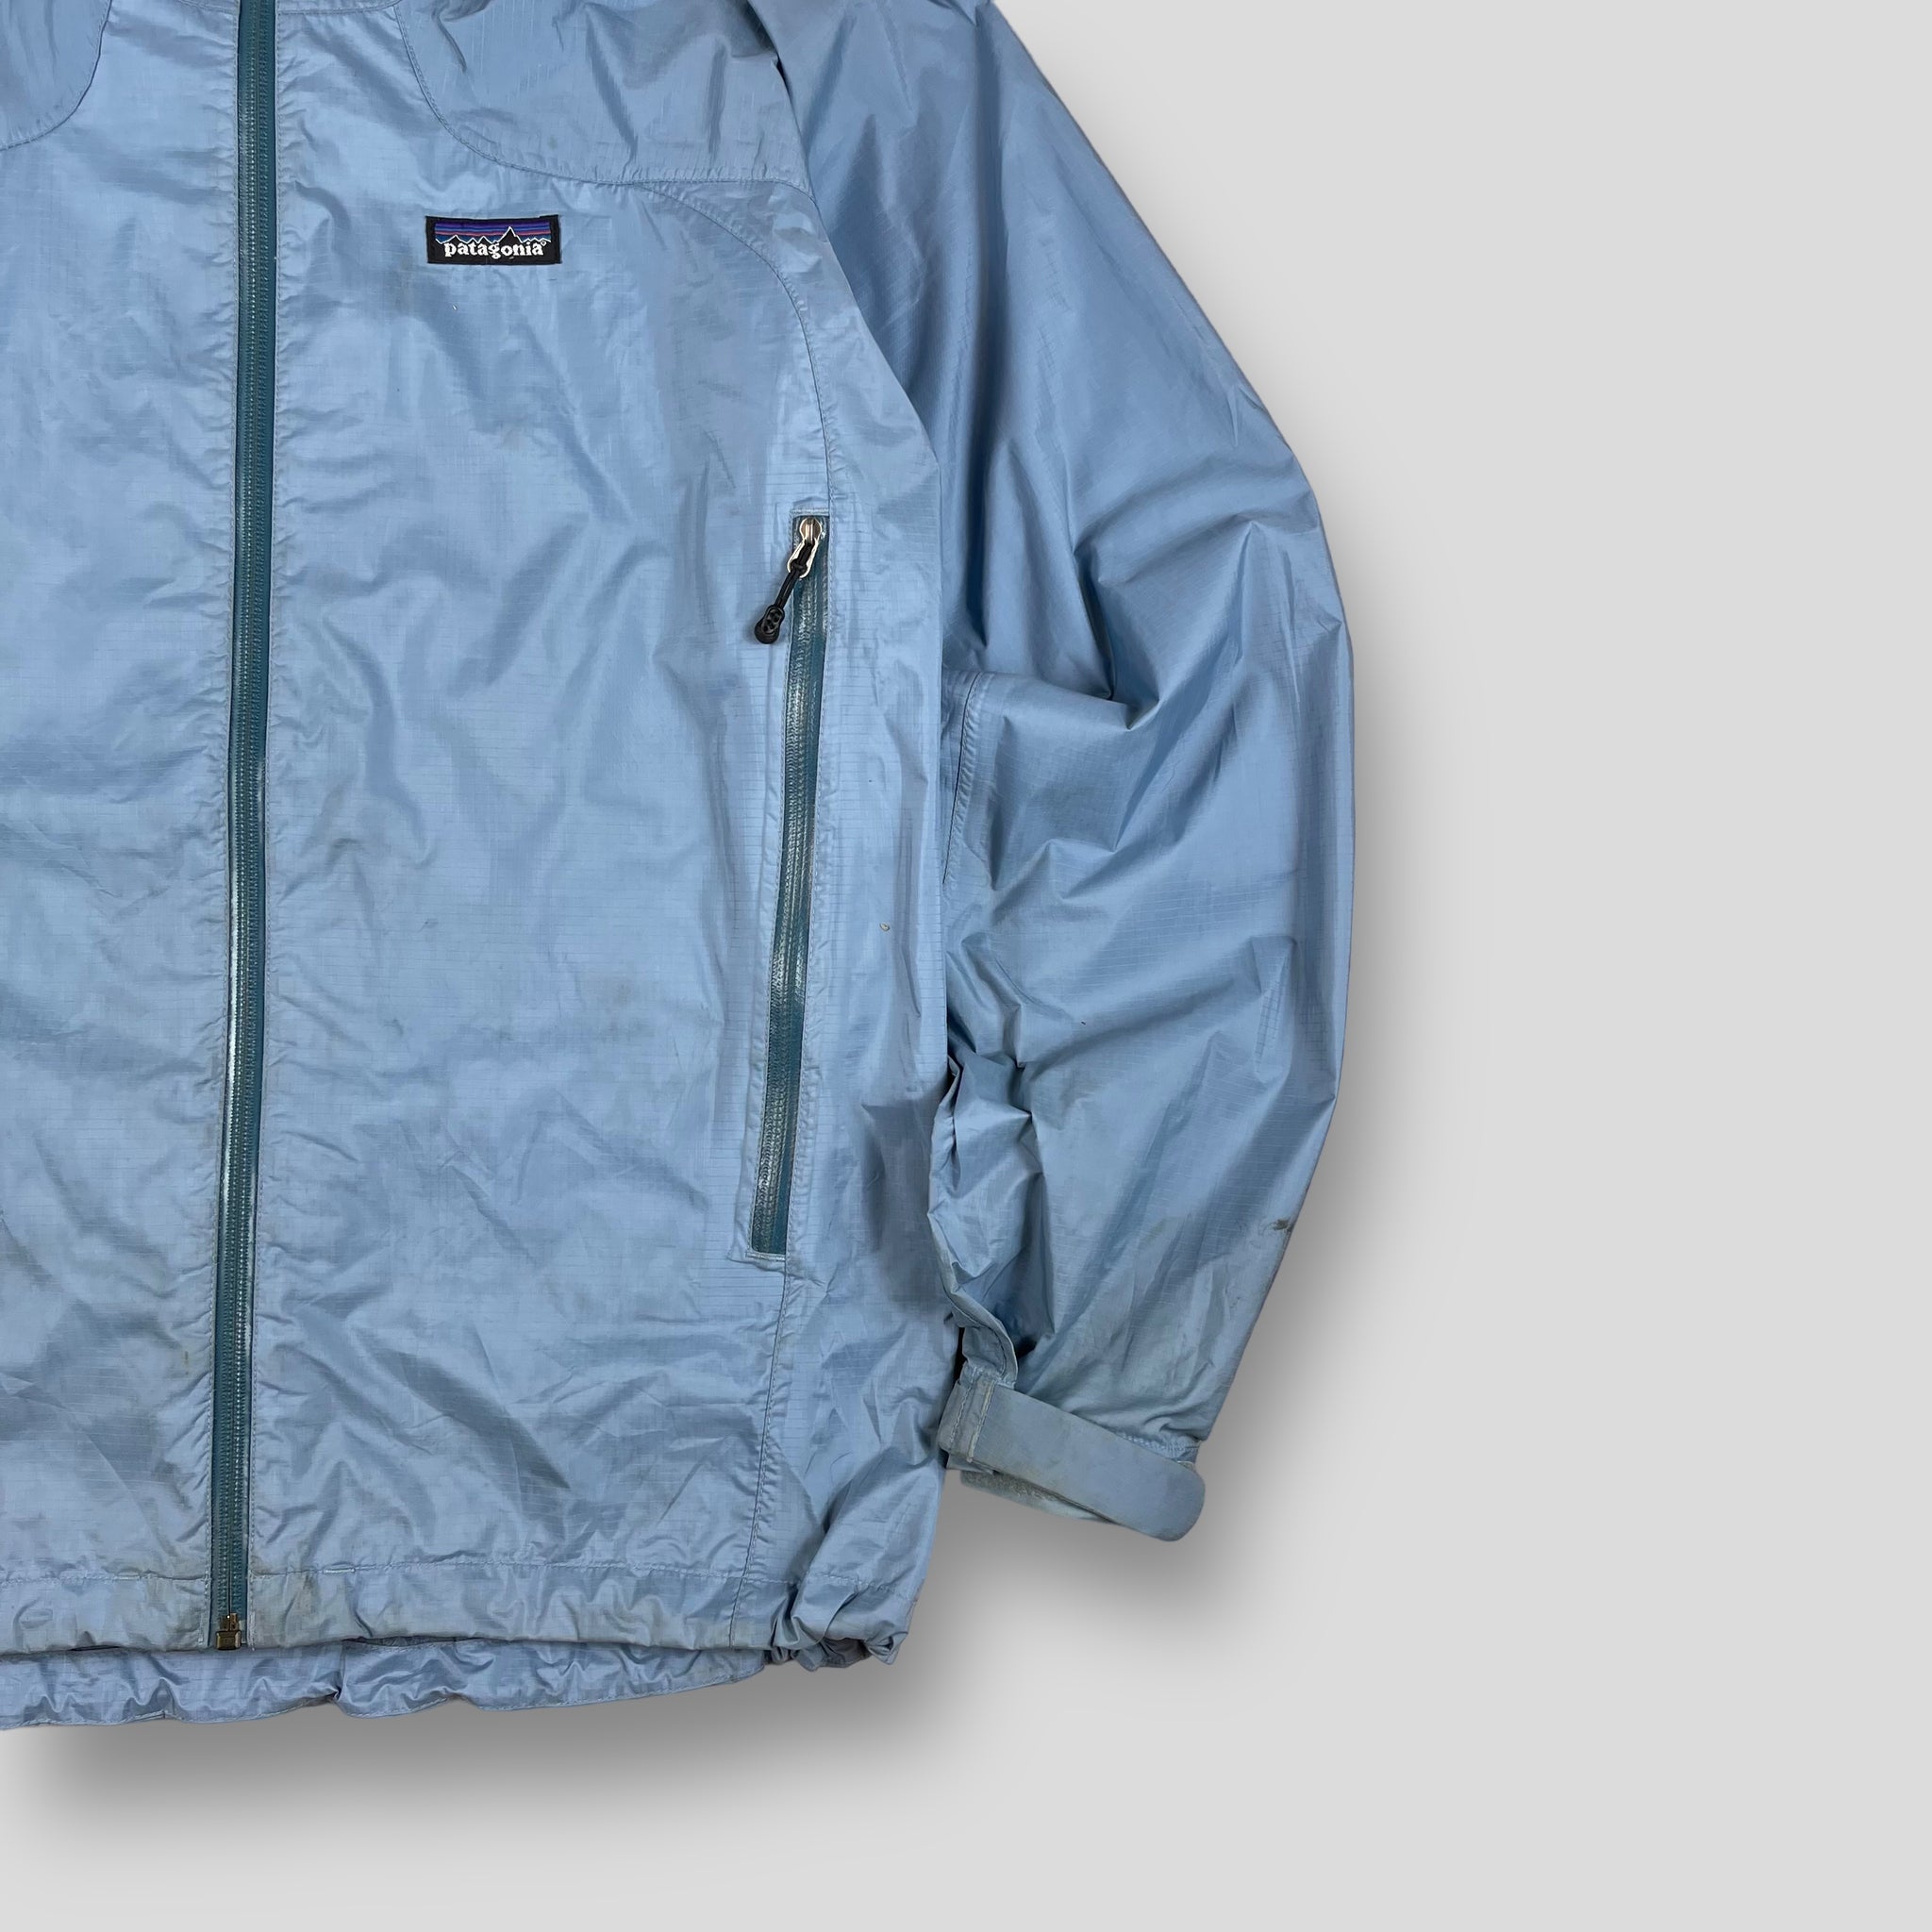 Vintage Patagonia jacket